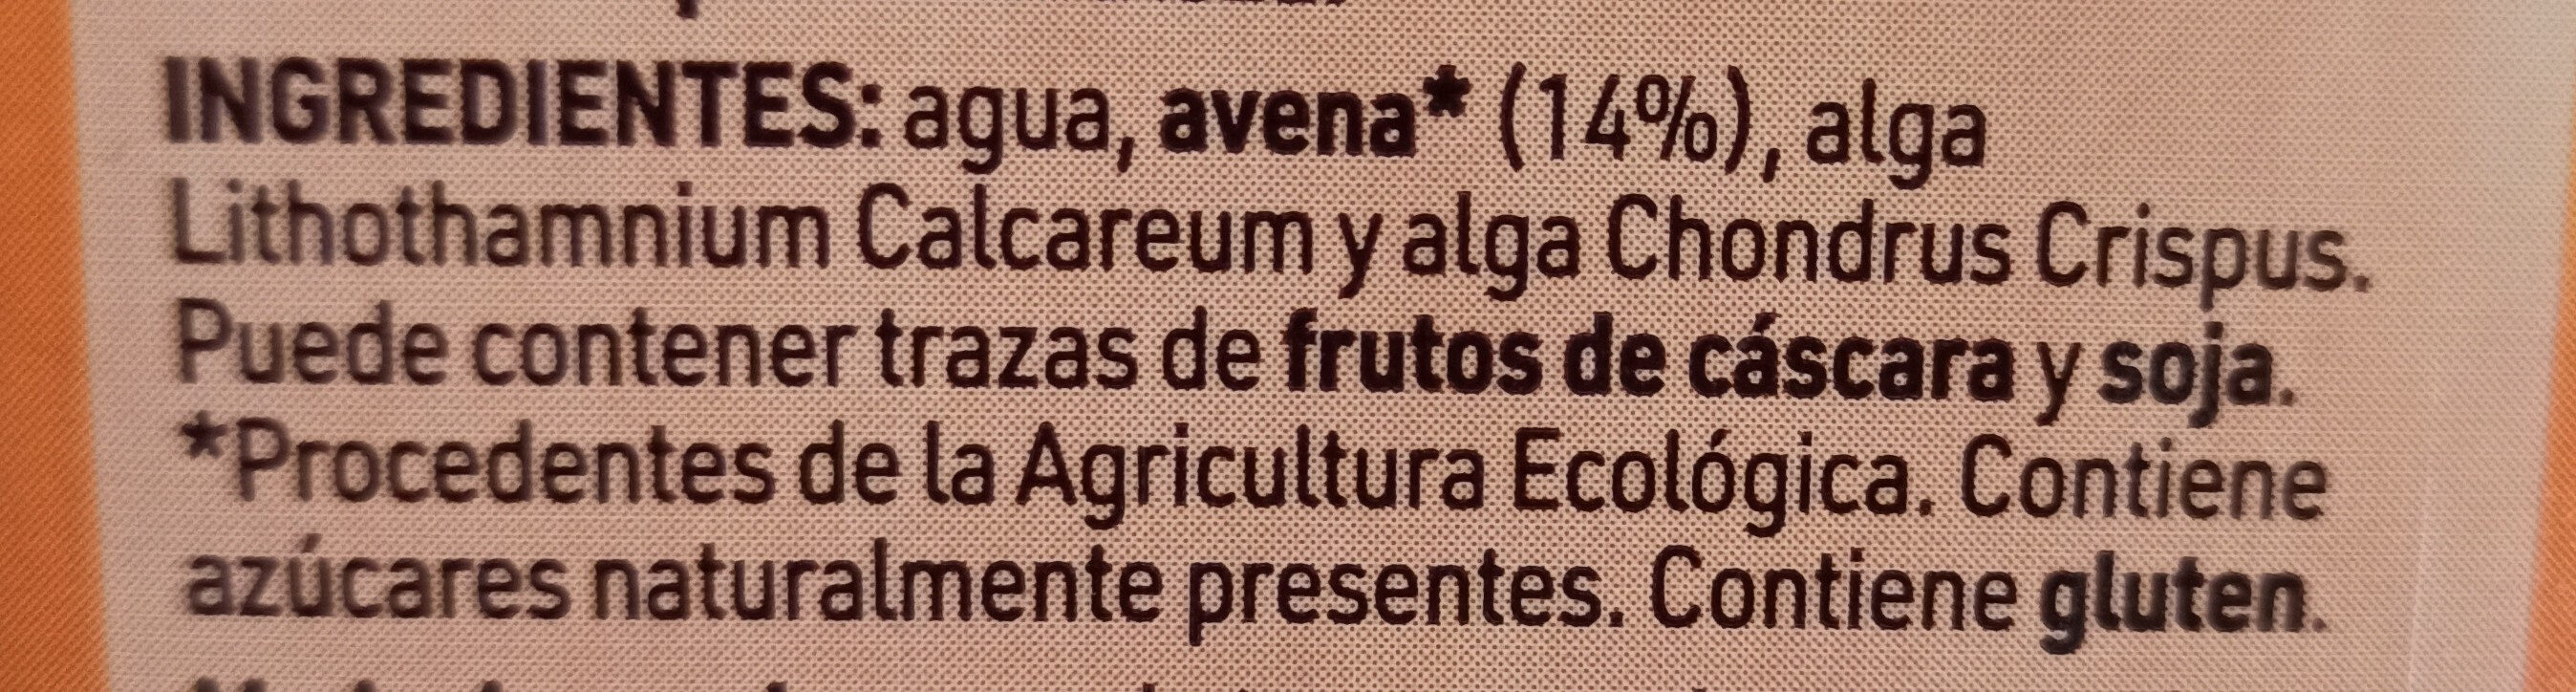 Bebida Avena con Calcio Biológica - Ingredients - es